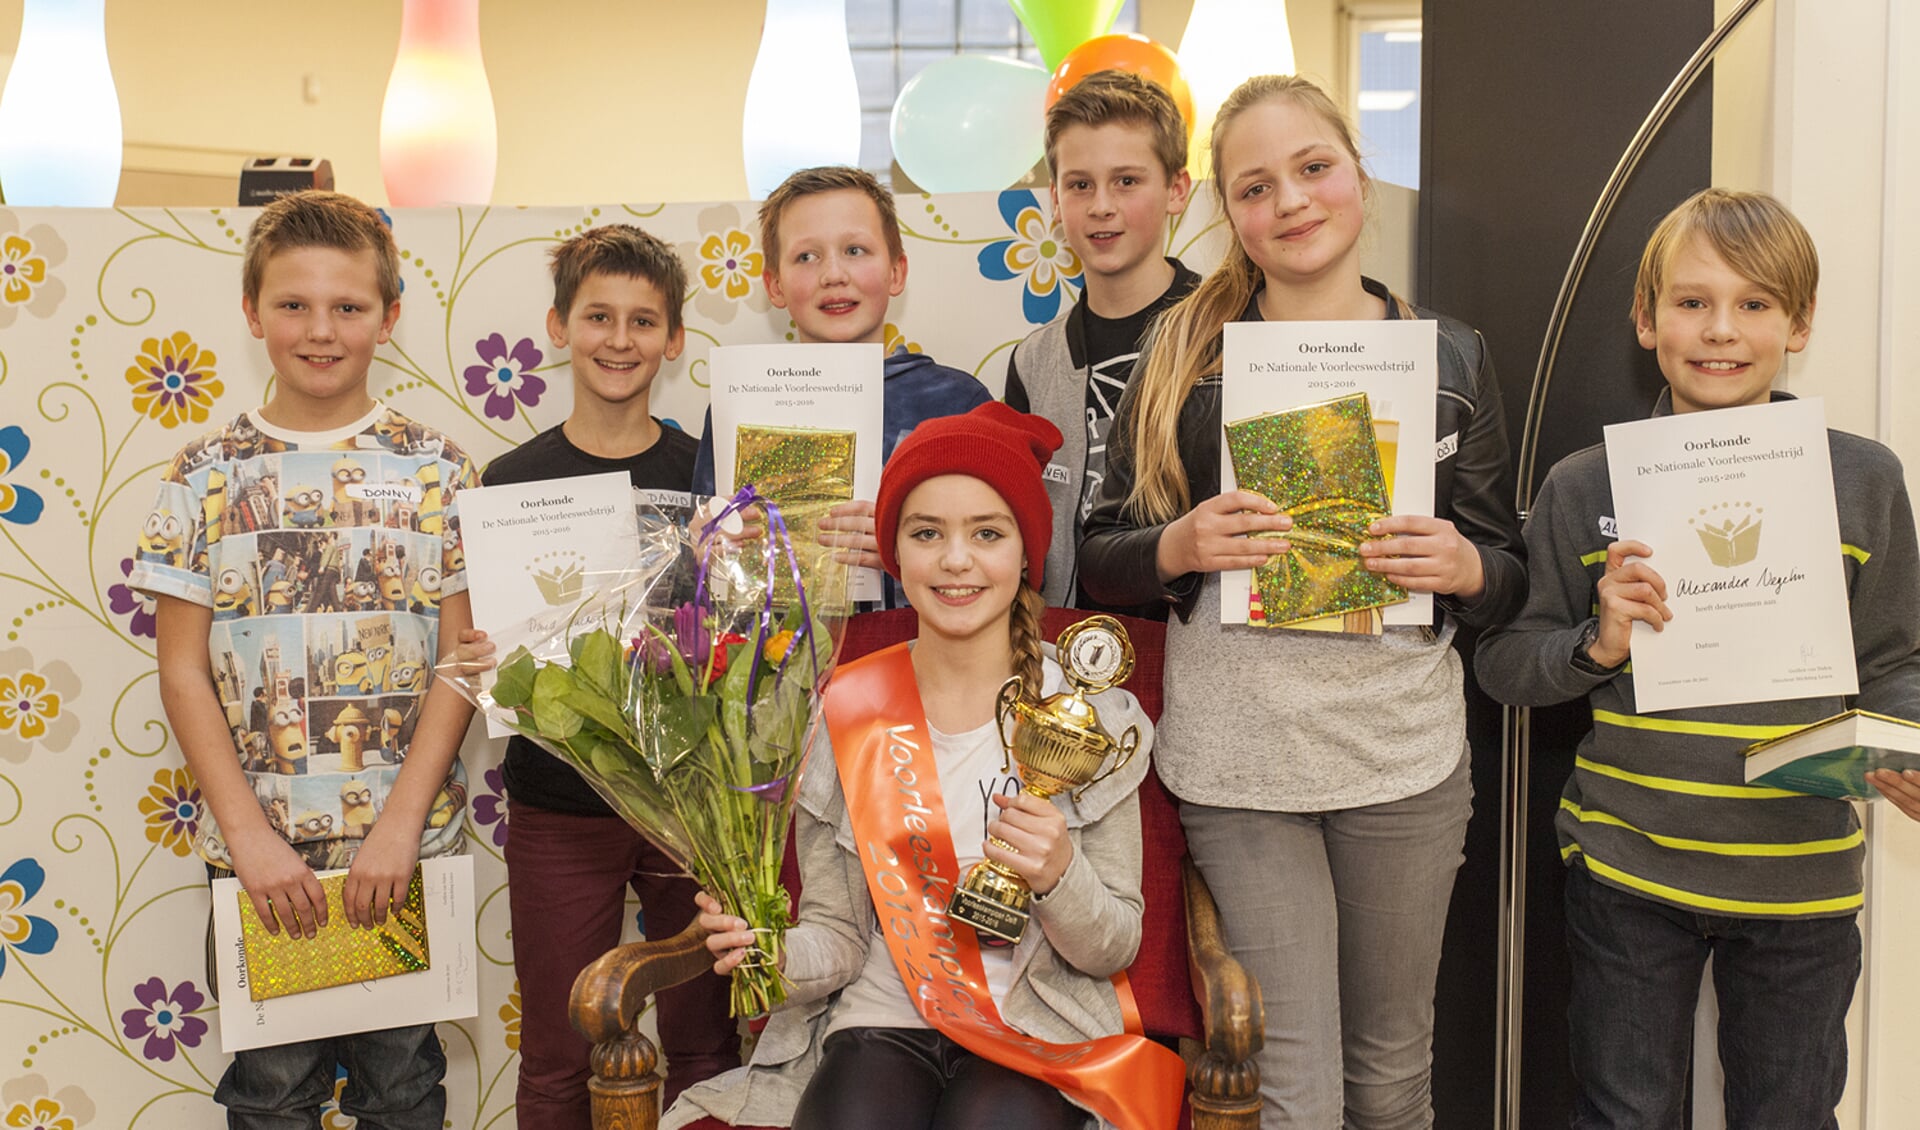 De finalisten van de Delftse voorleeswedstrijd, met centraal en vooraan Bobbi Smit. 